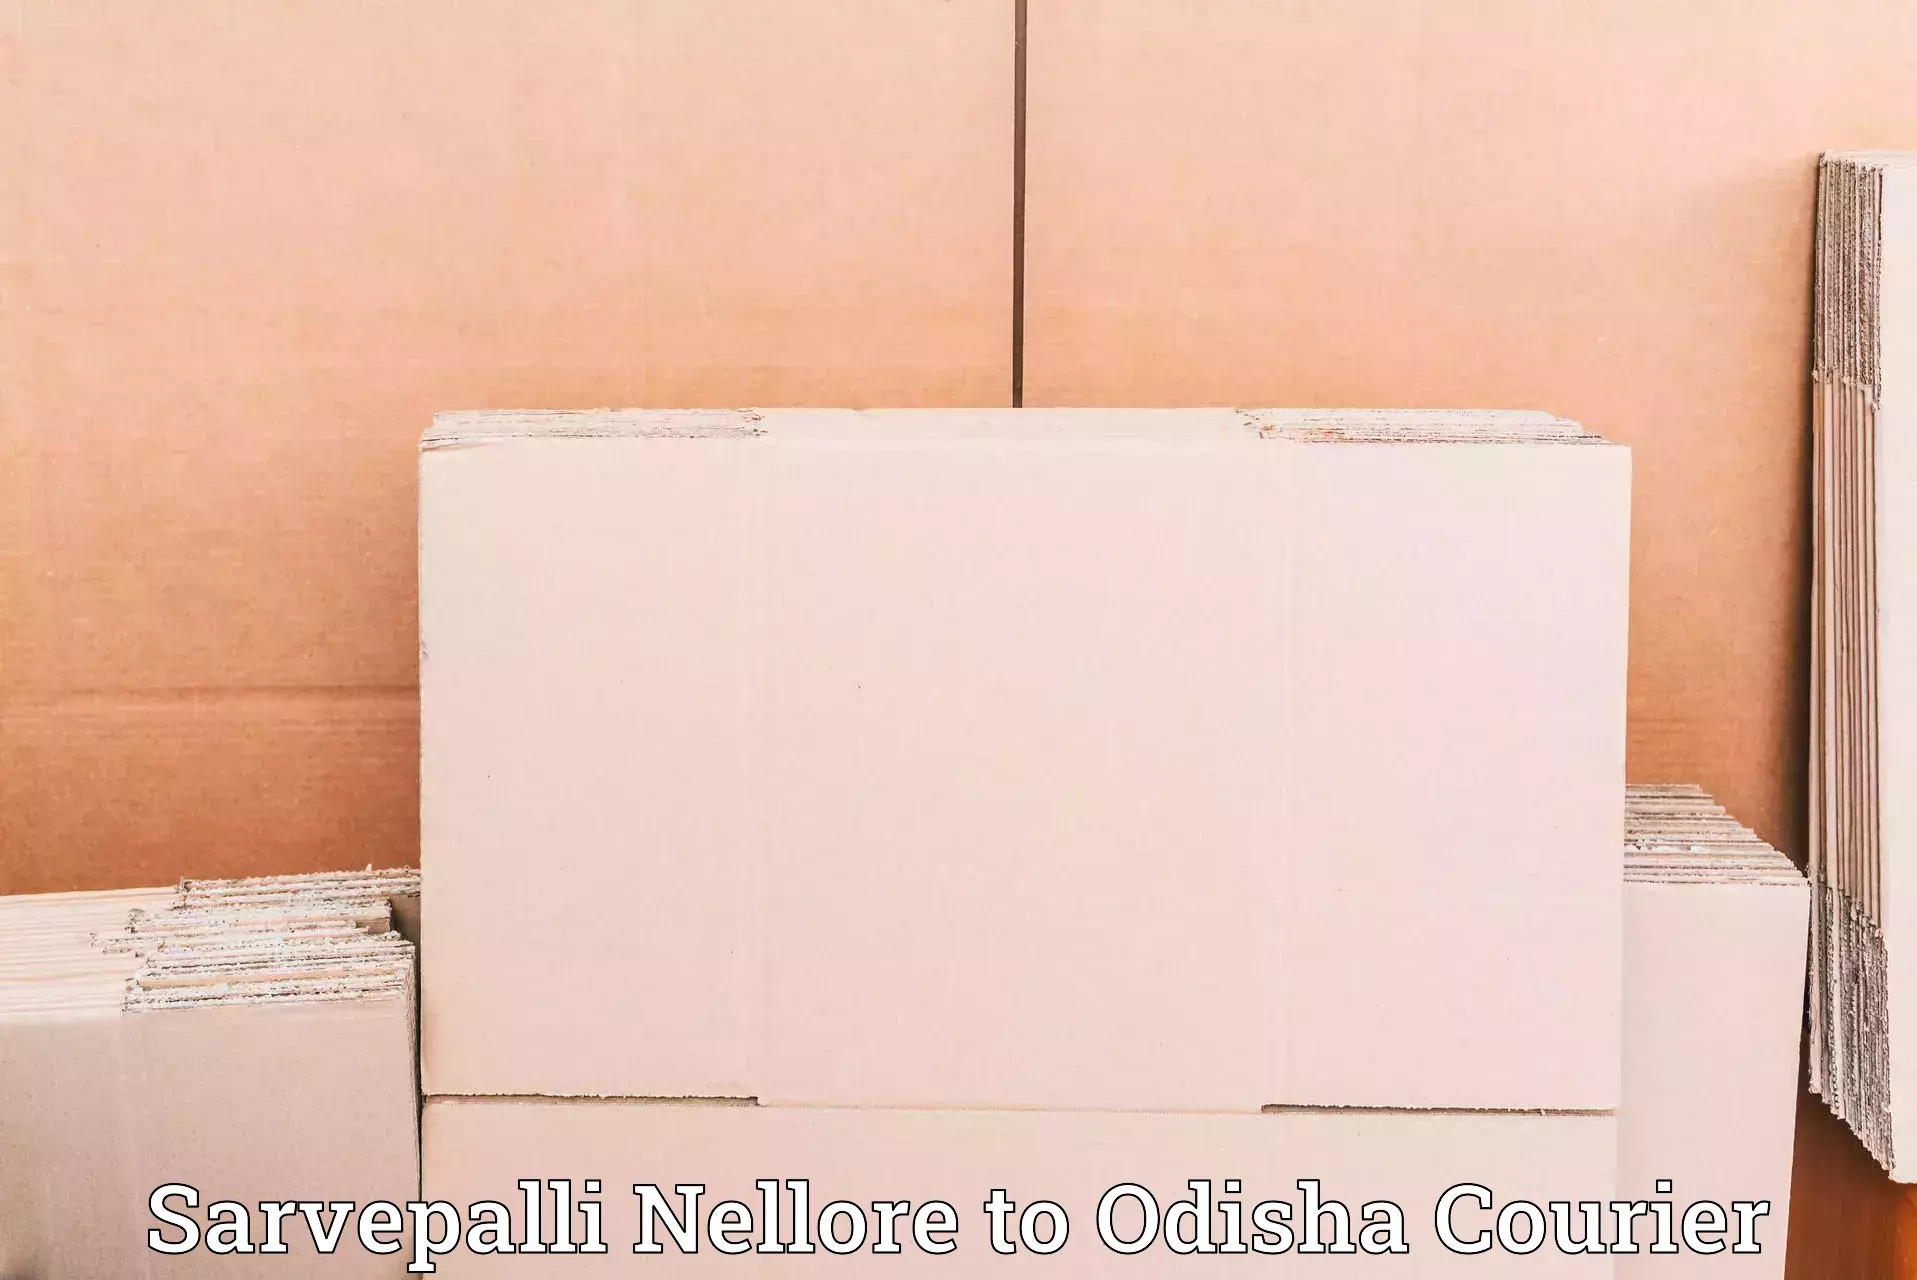 Reliable courier service Sarvepalli Nellore to Mathili